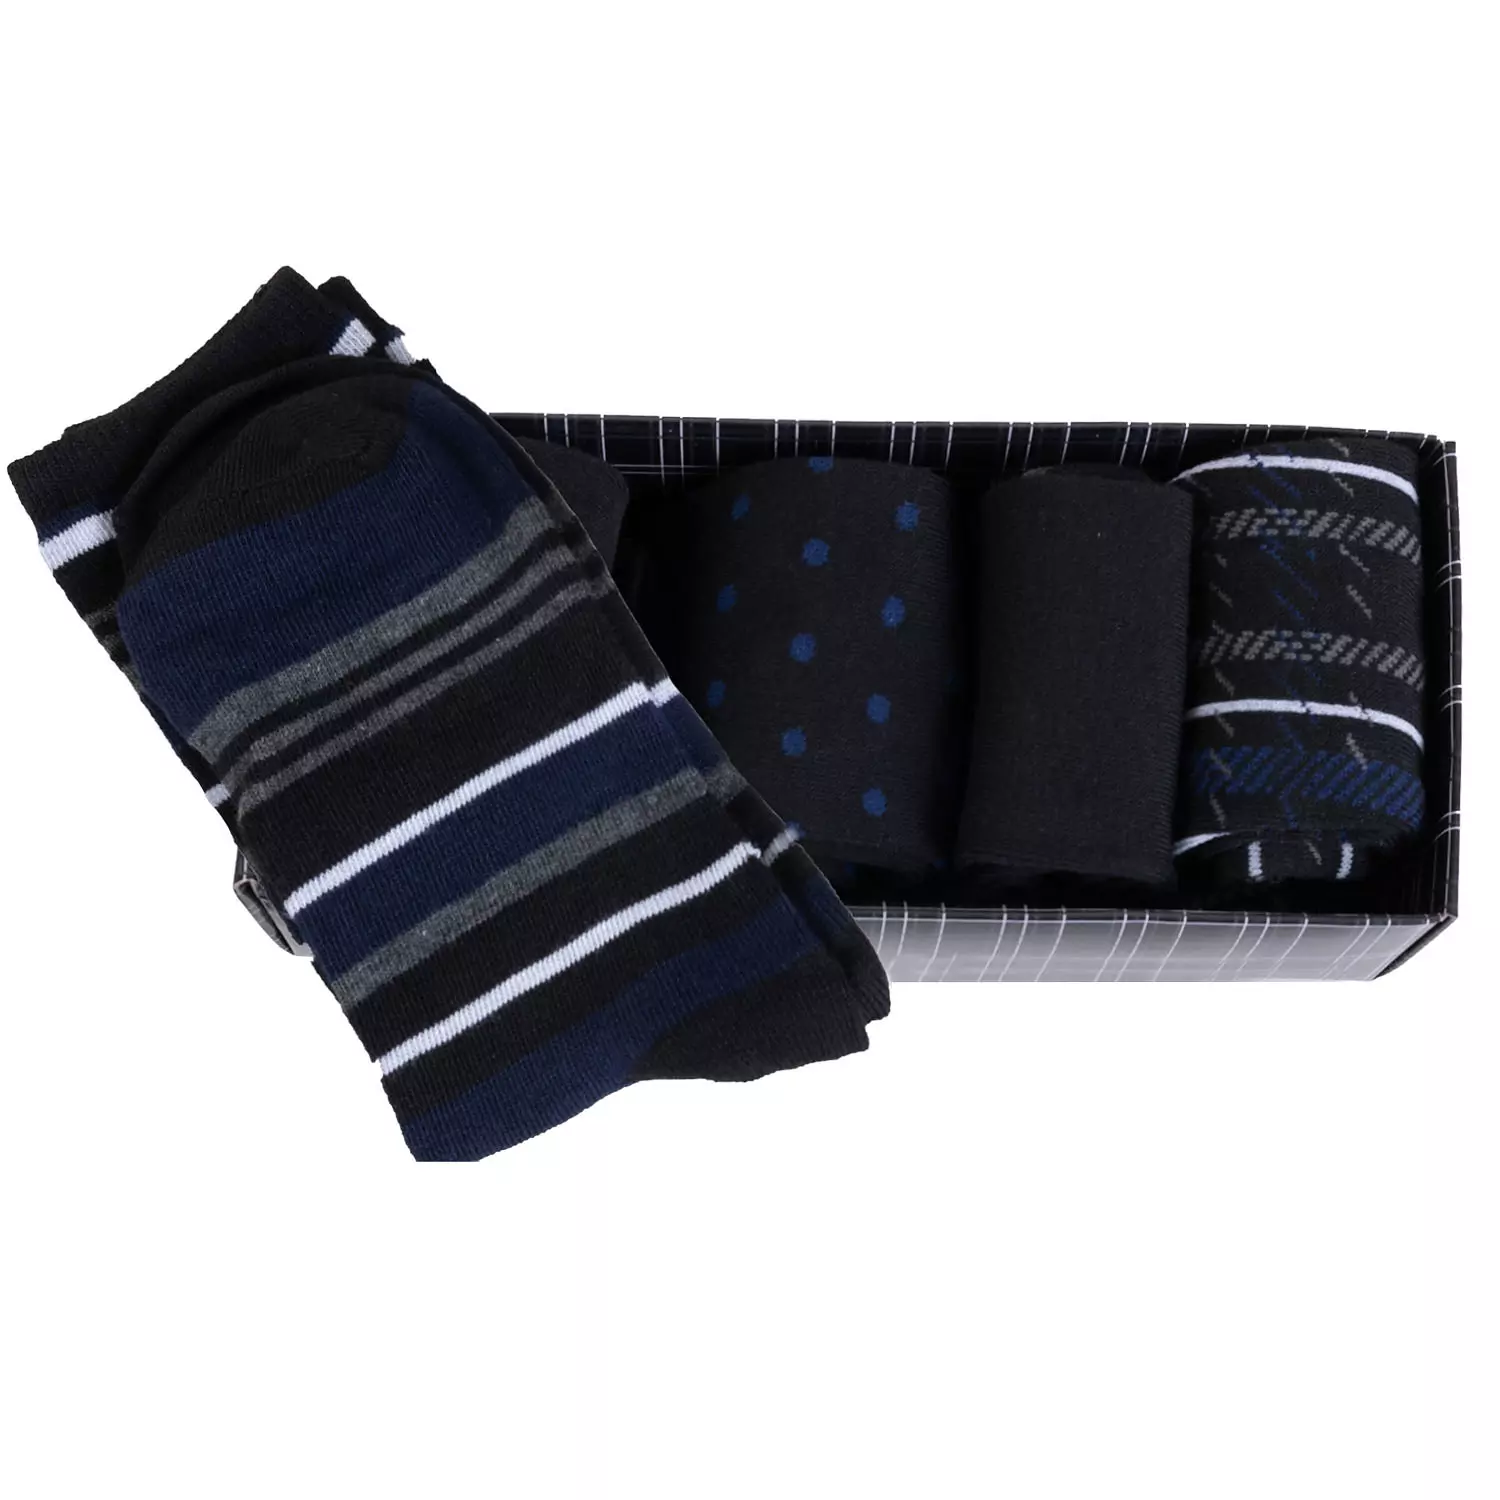 Boîte cadeau de 5 paires de chaussettes habillées à motifs